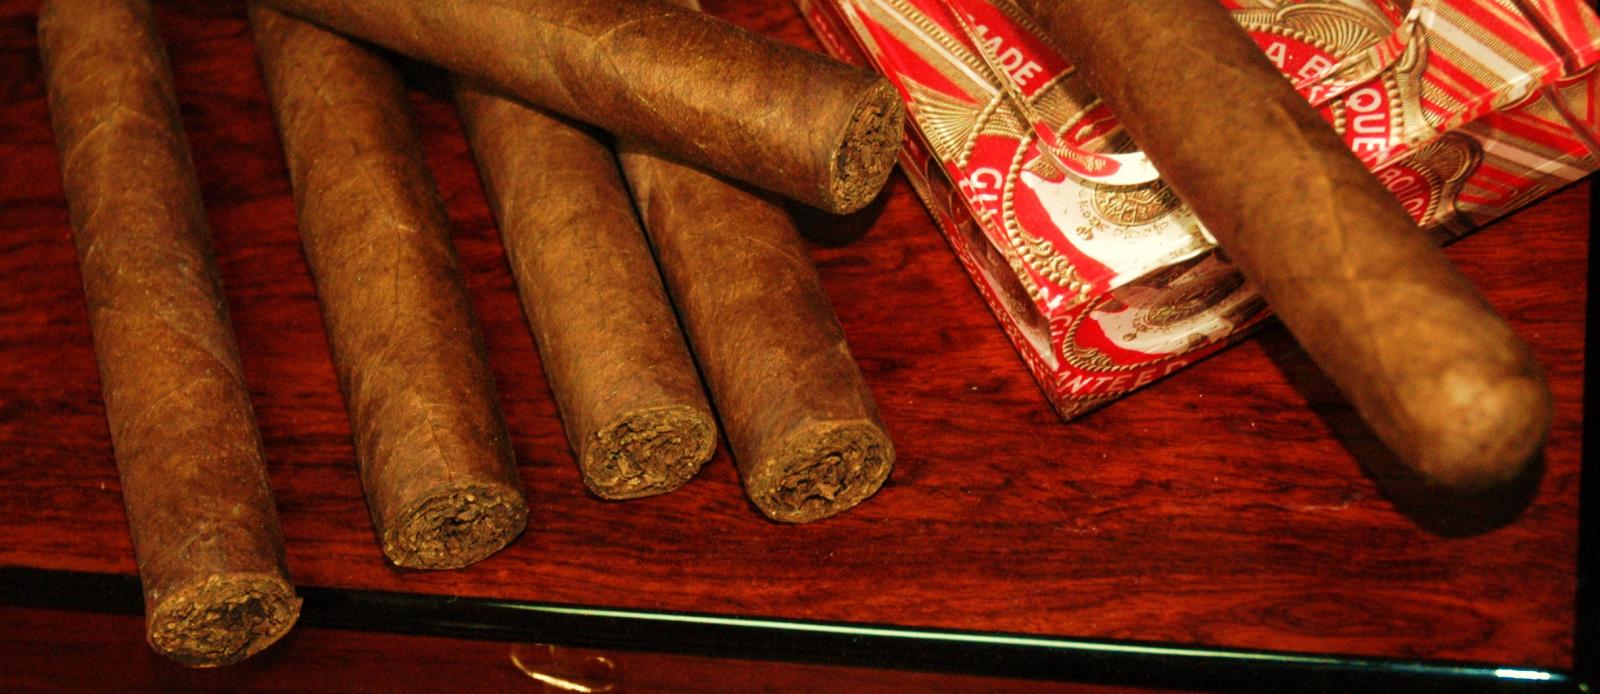 cigars 045.JPG